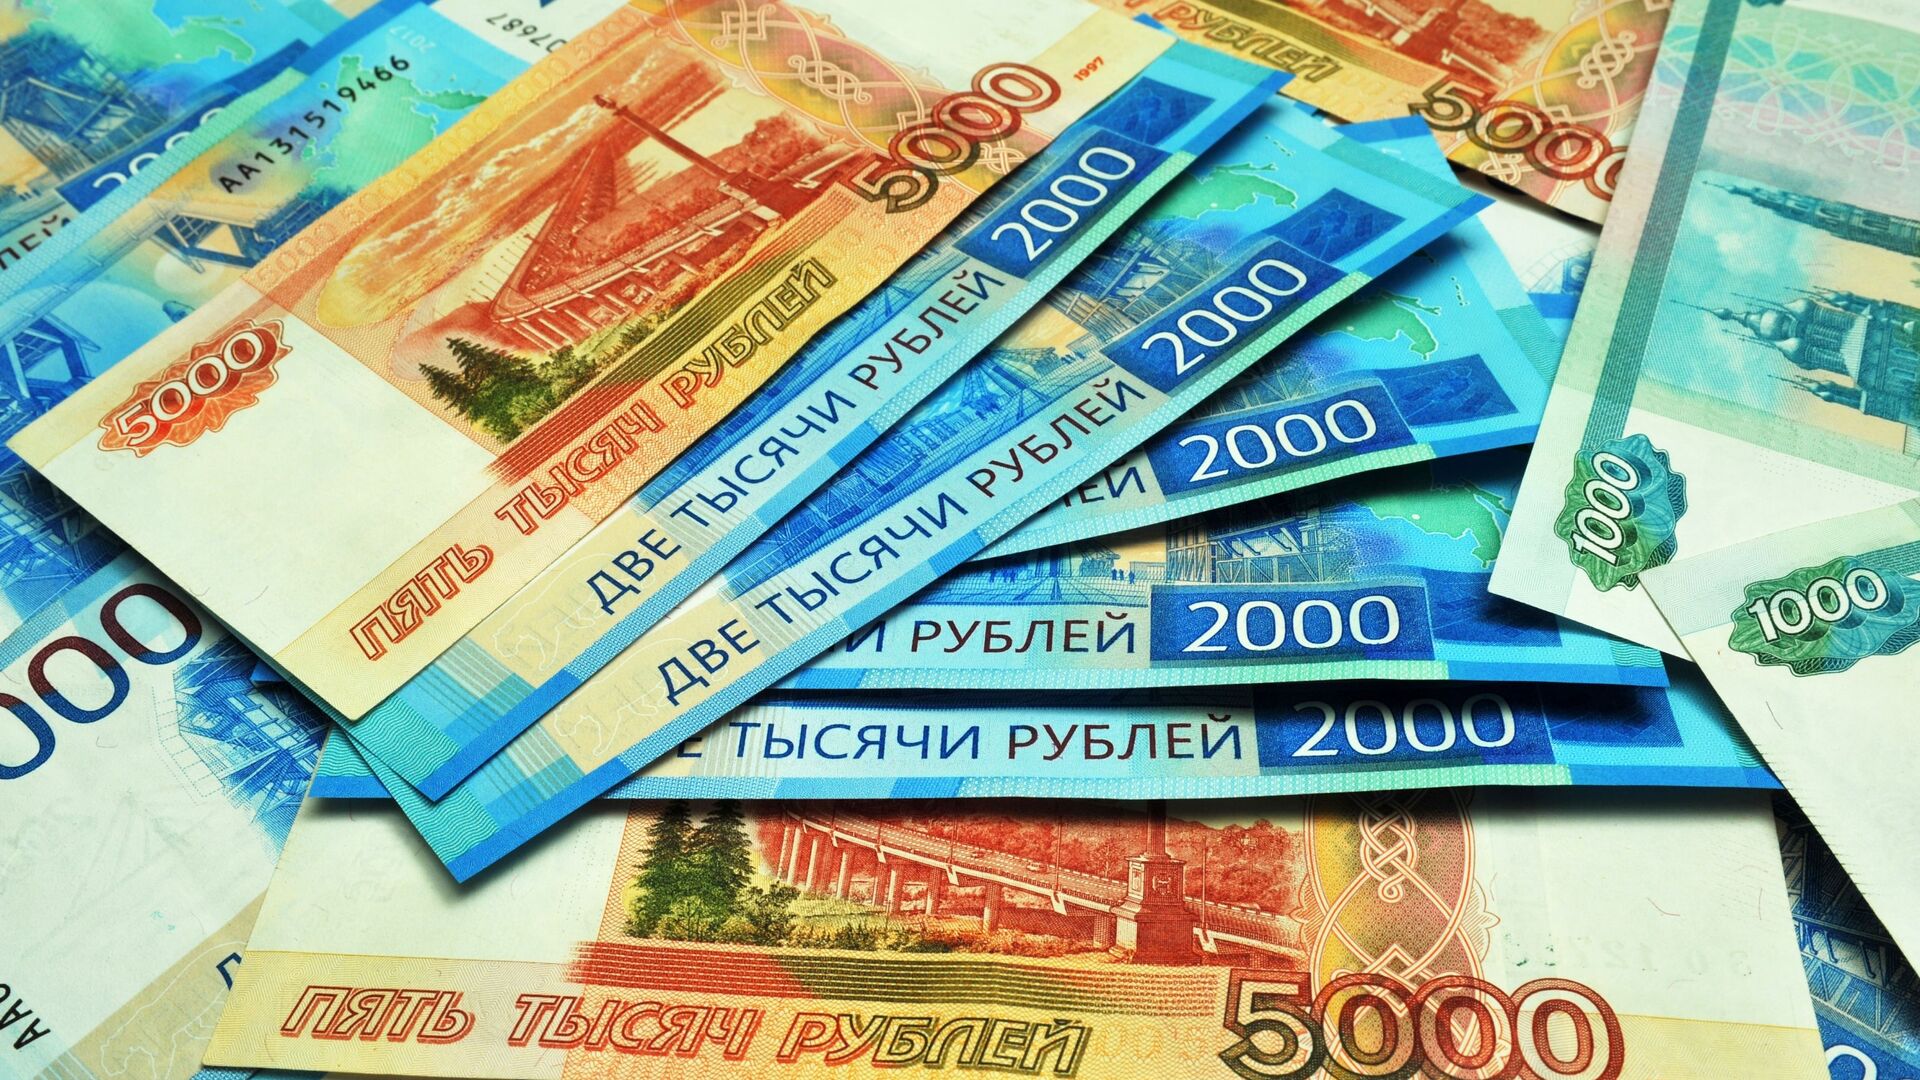 Банкноты номиналом 1000, 2000 и 5000 рублей. - Sputnik Узбекистан, 1920, 25.03.2022